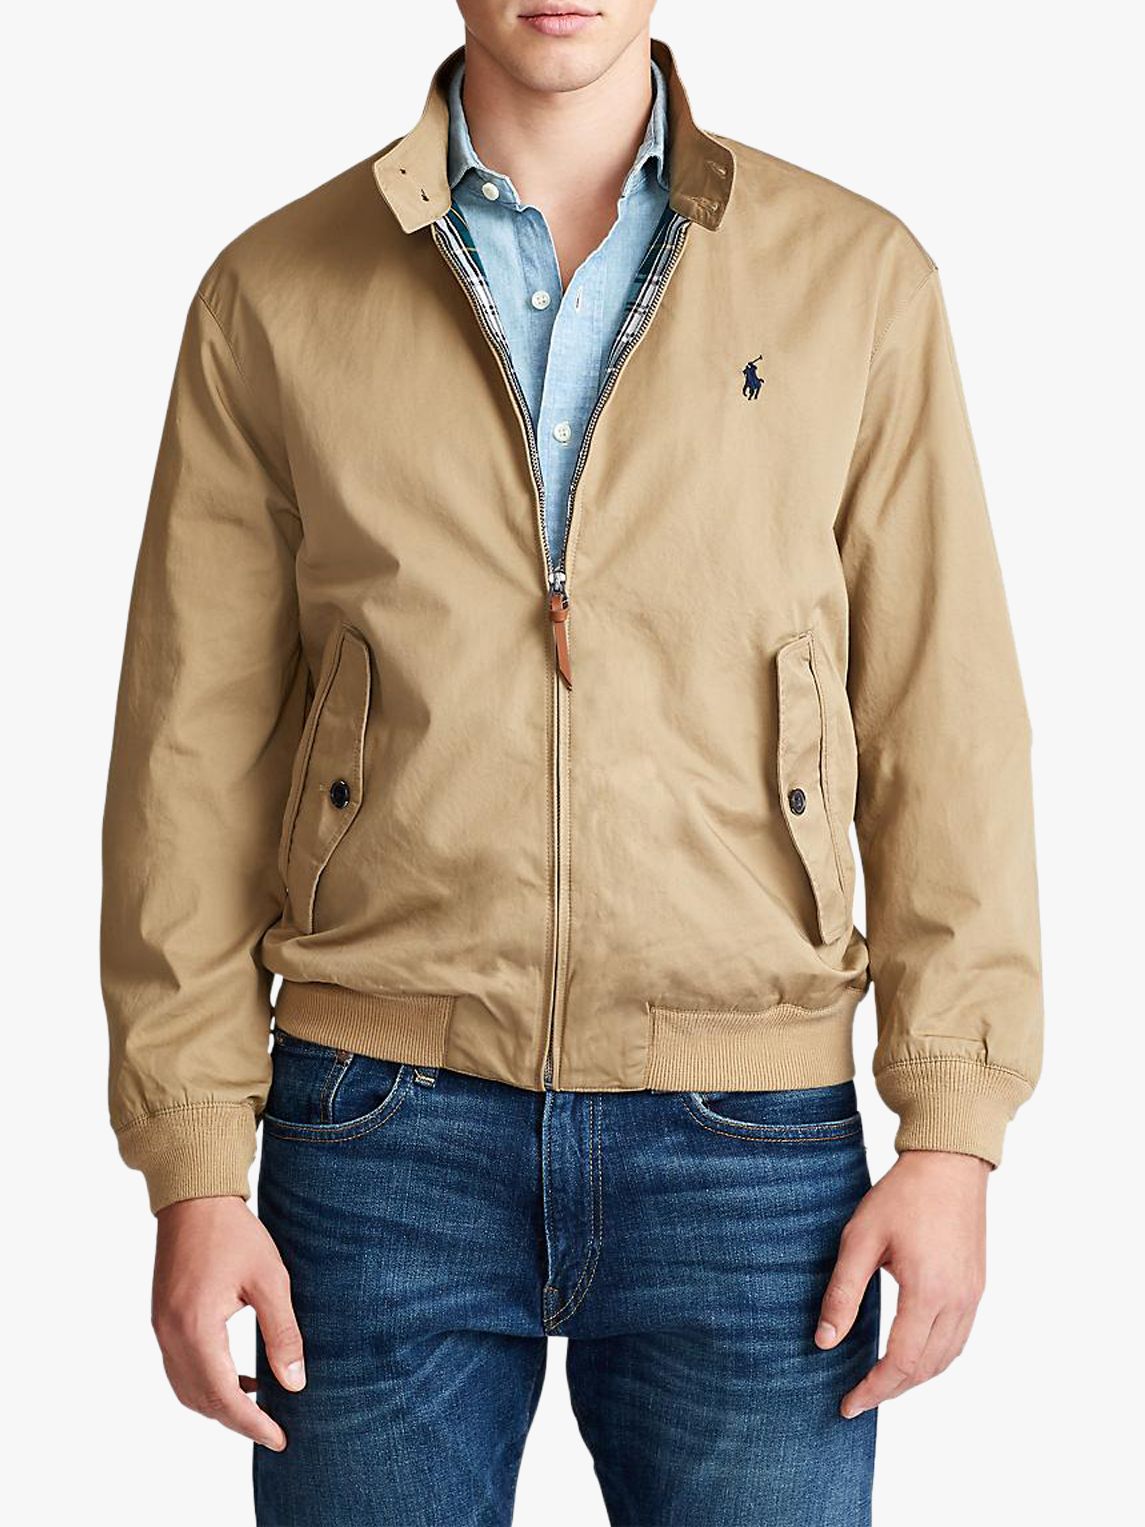 polo jacket cotton